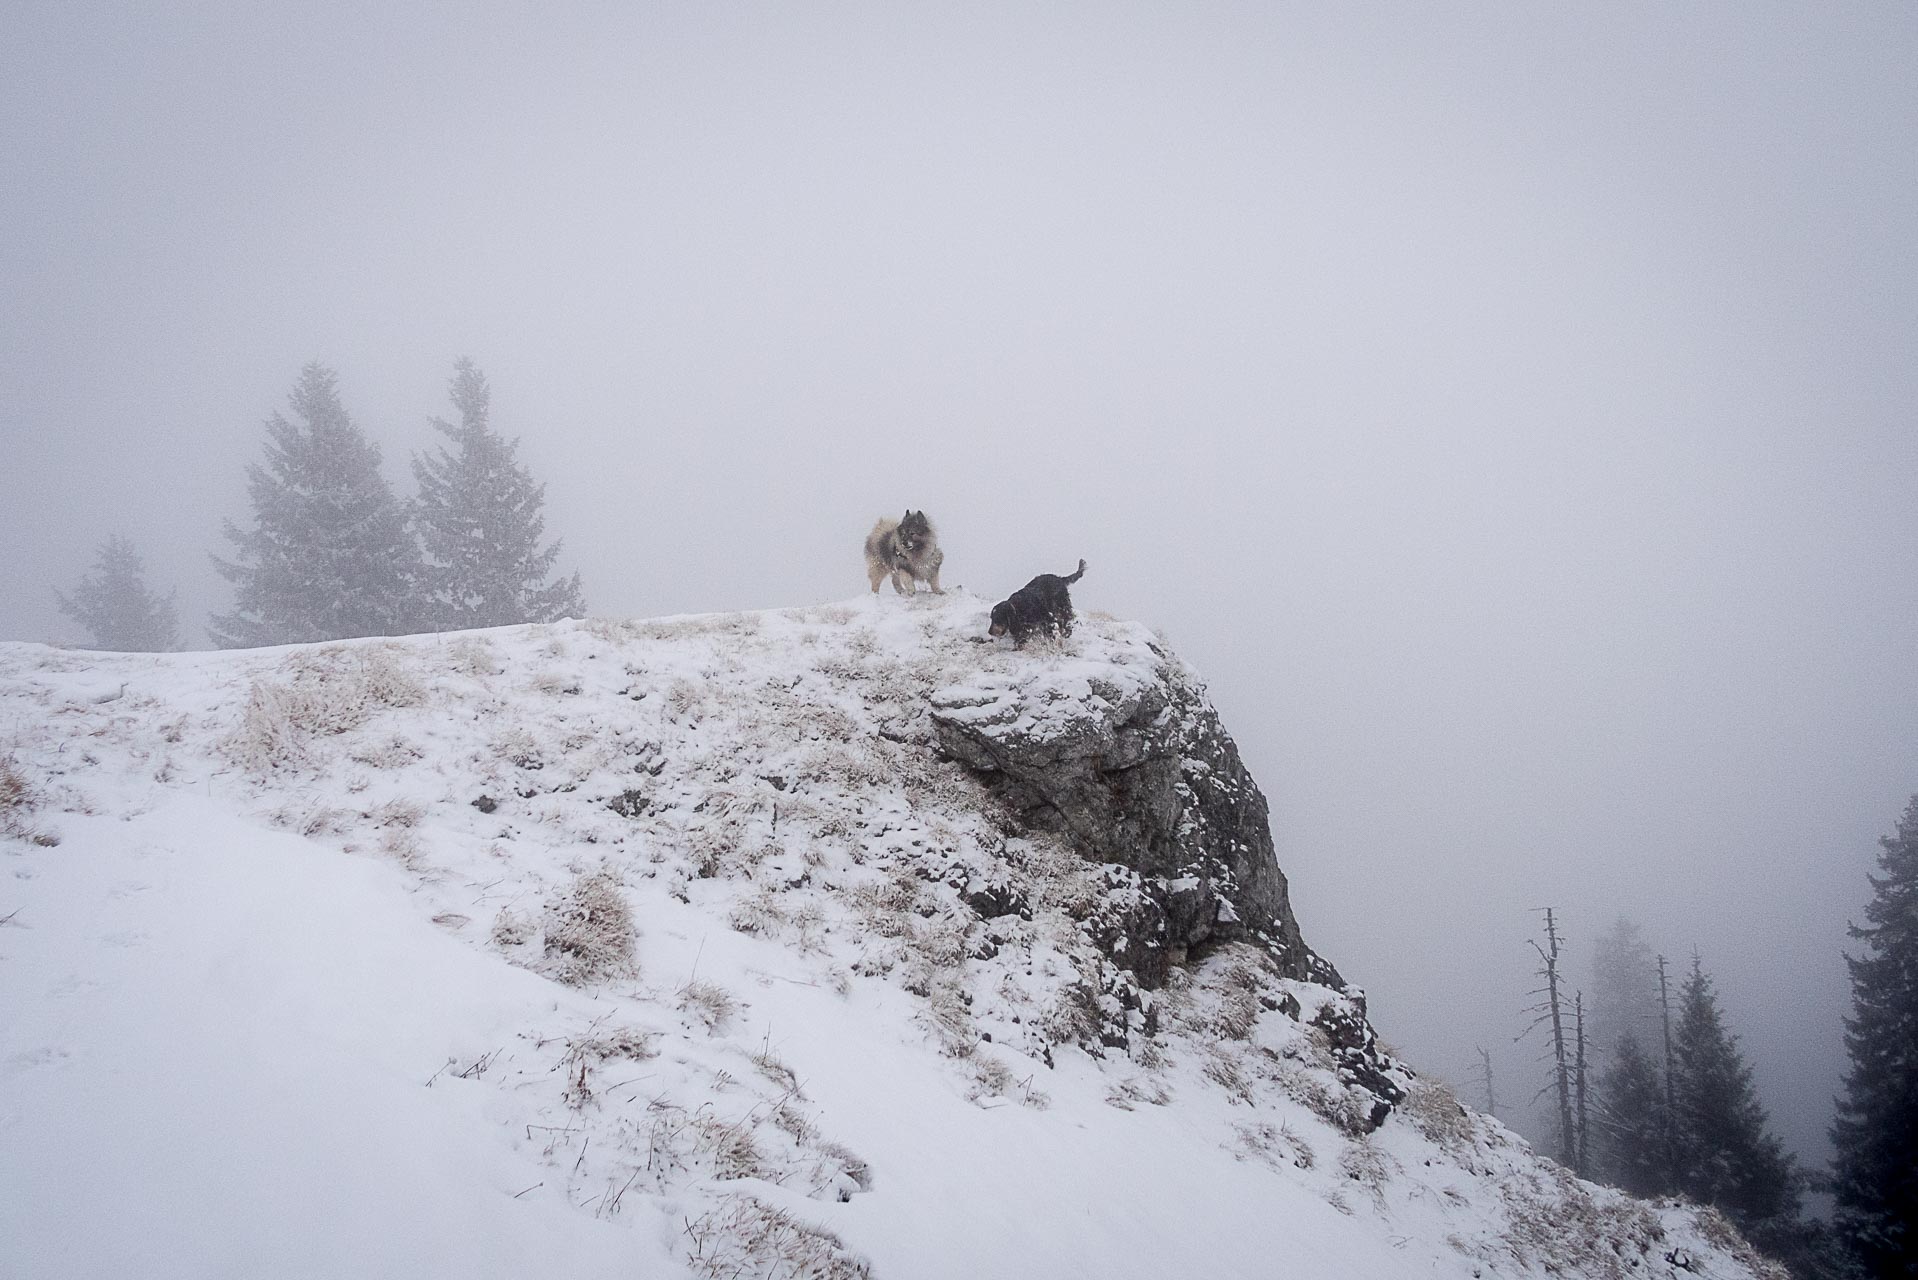 Poludnica zo Závažnej Poruby v zime (Nízke Tatry)